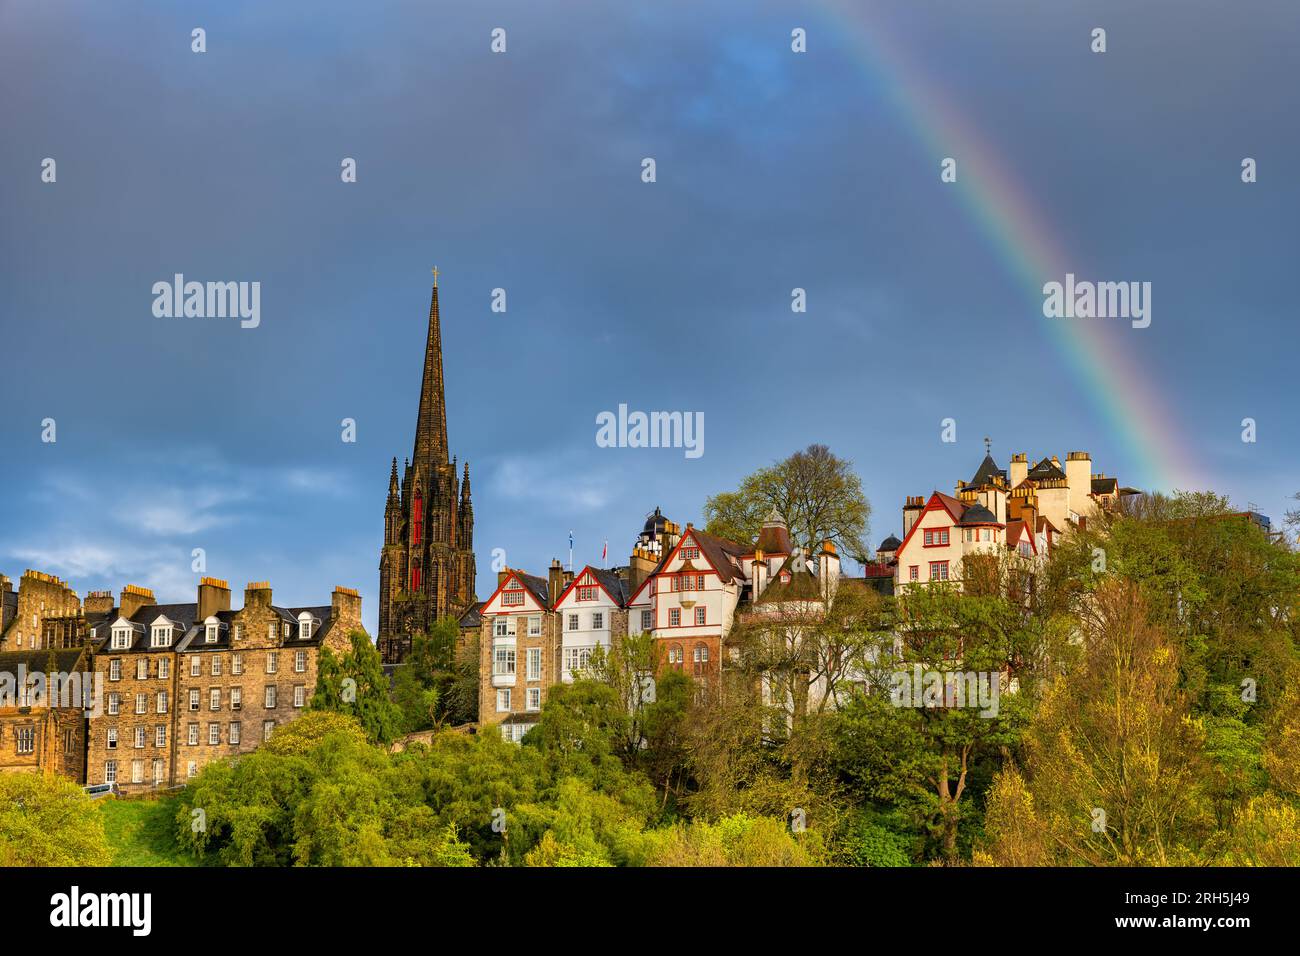 Skyline der Altstadt von Edinburgh mit Ramsay Garden Häusern, dem Hub Tower und Regenbogen am Himmel in Schottland, Großbritannien. Stockfoto